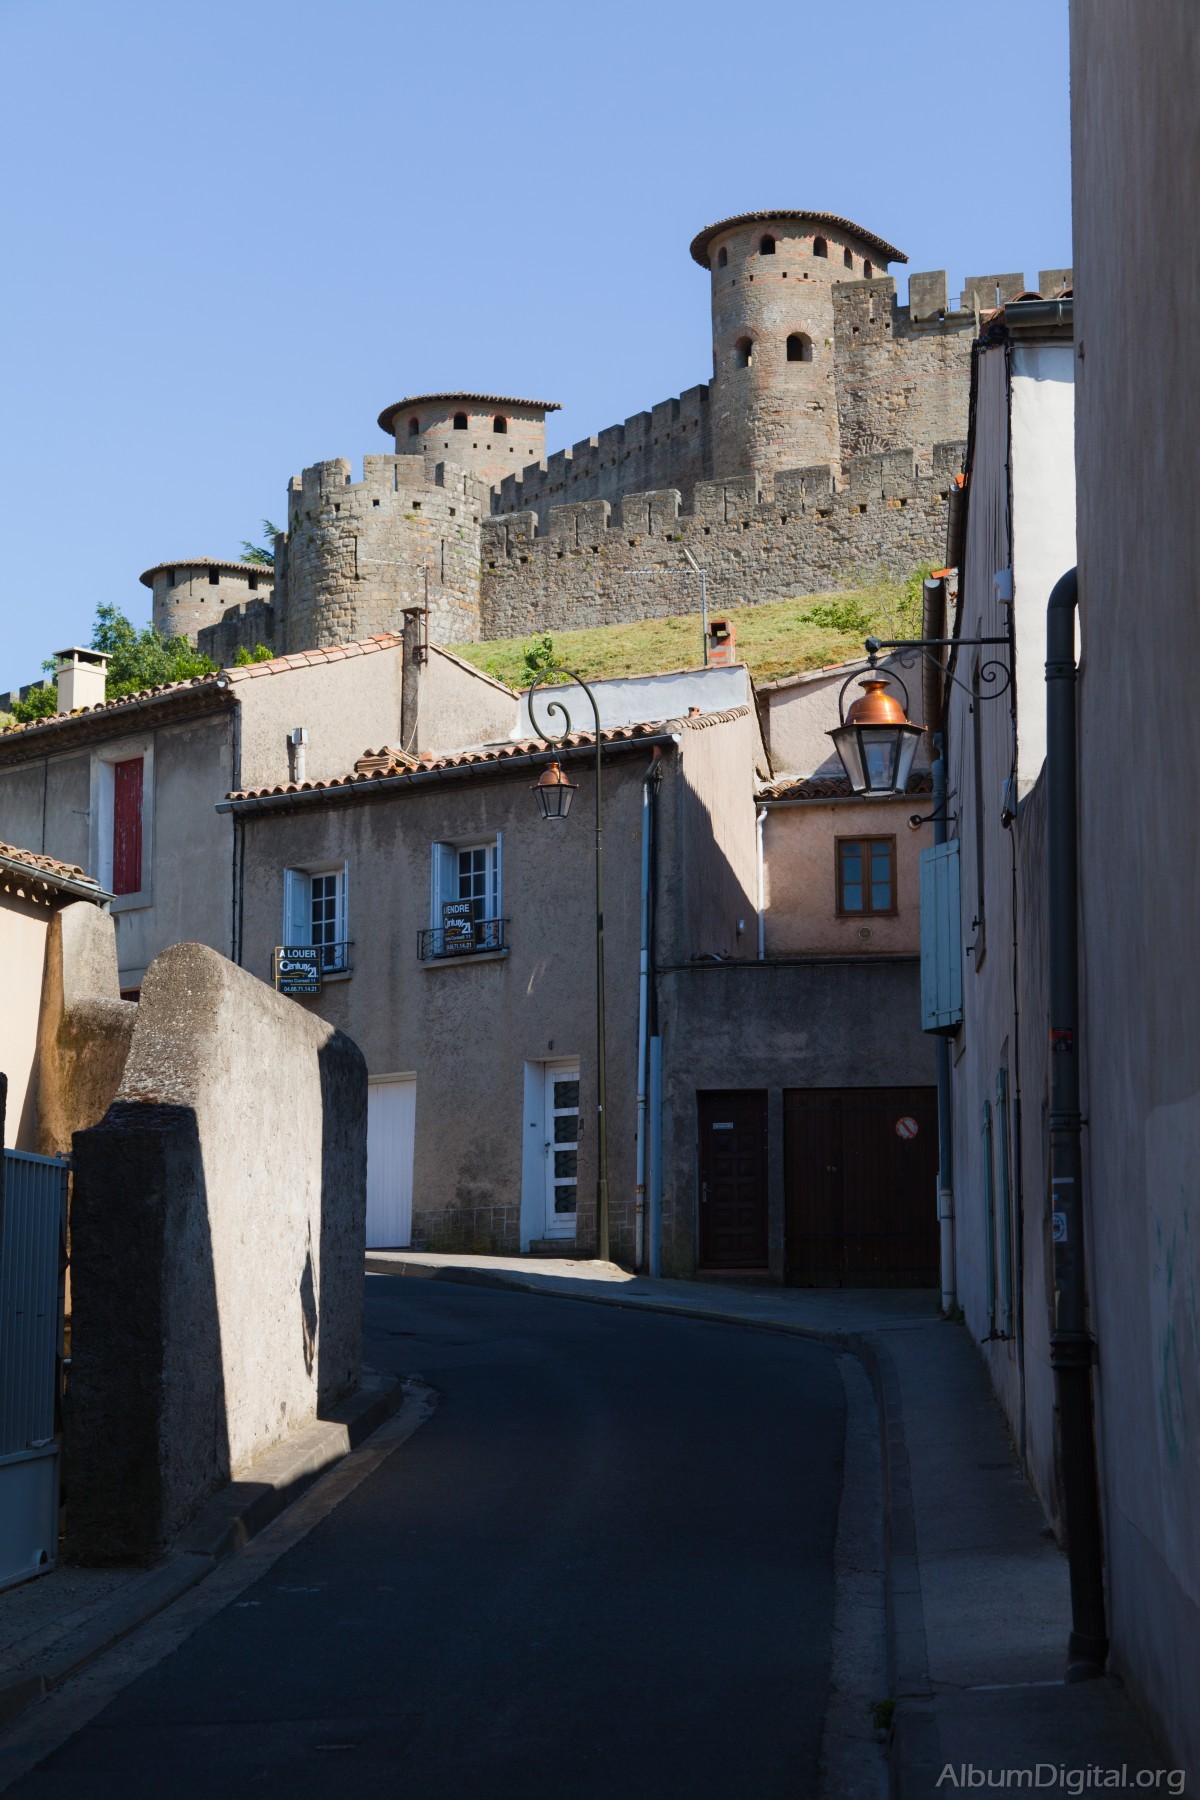 Rincon de Carcassonne